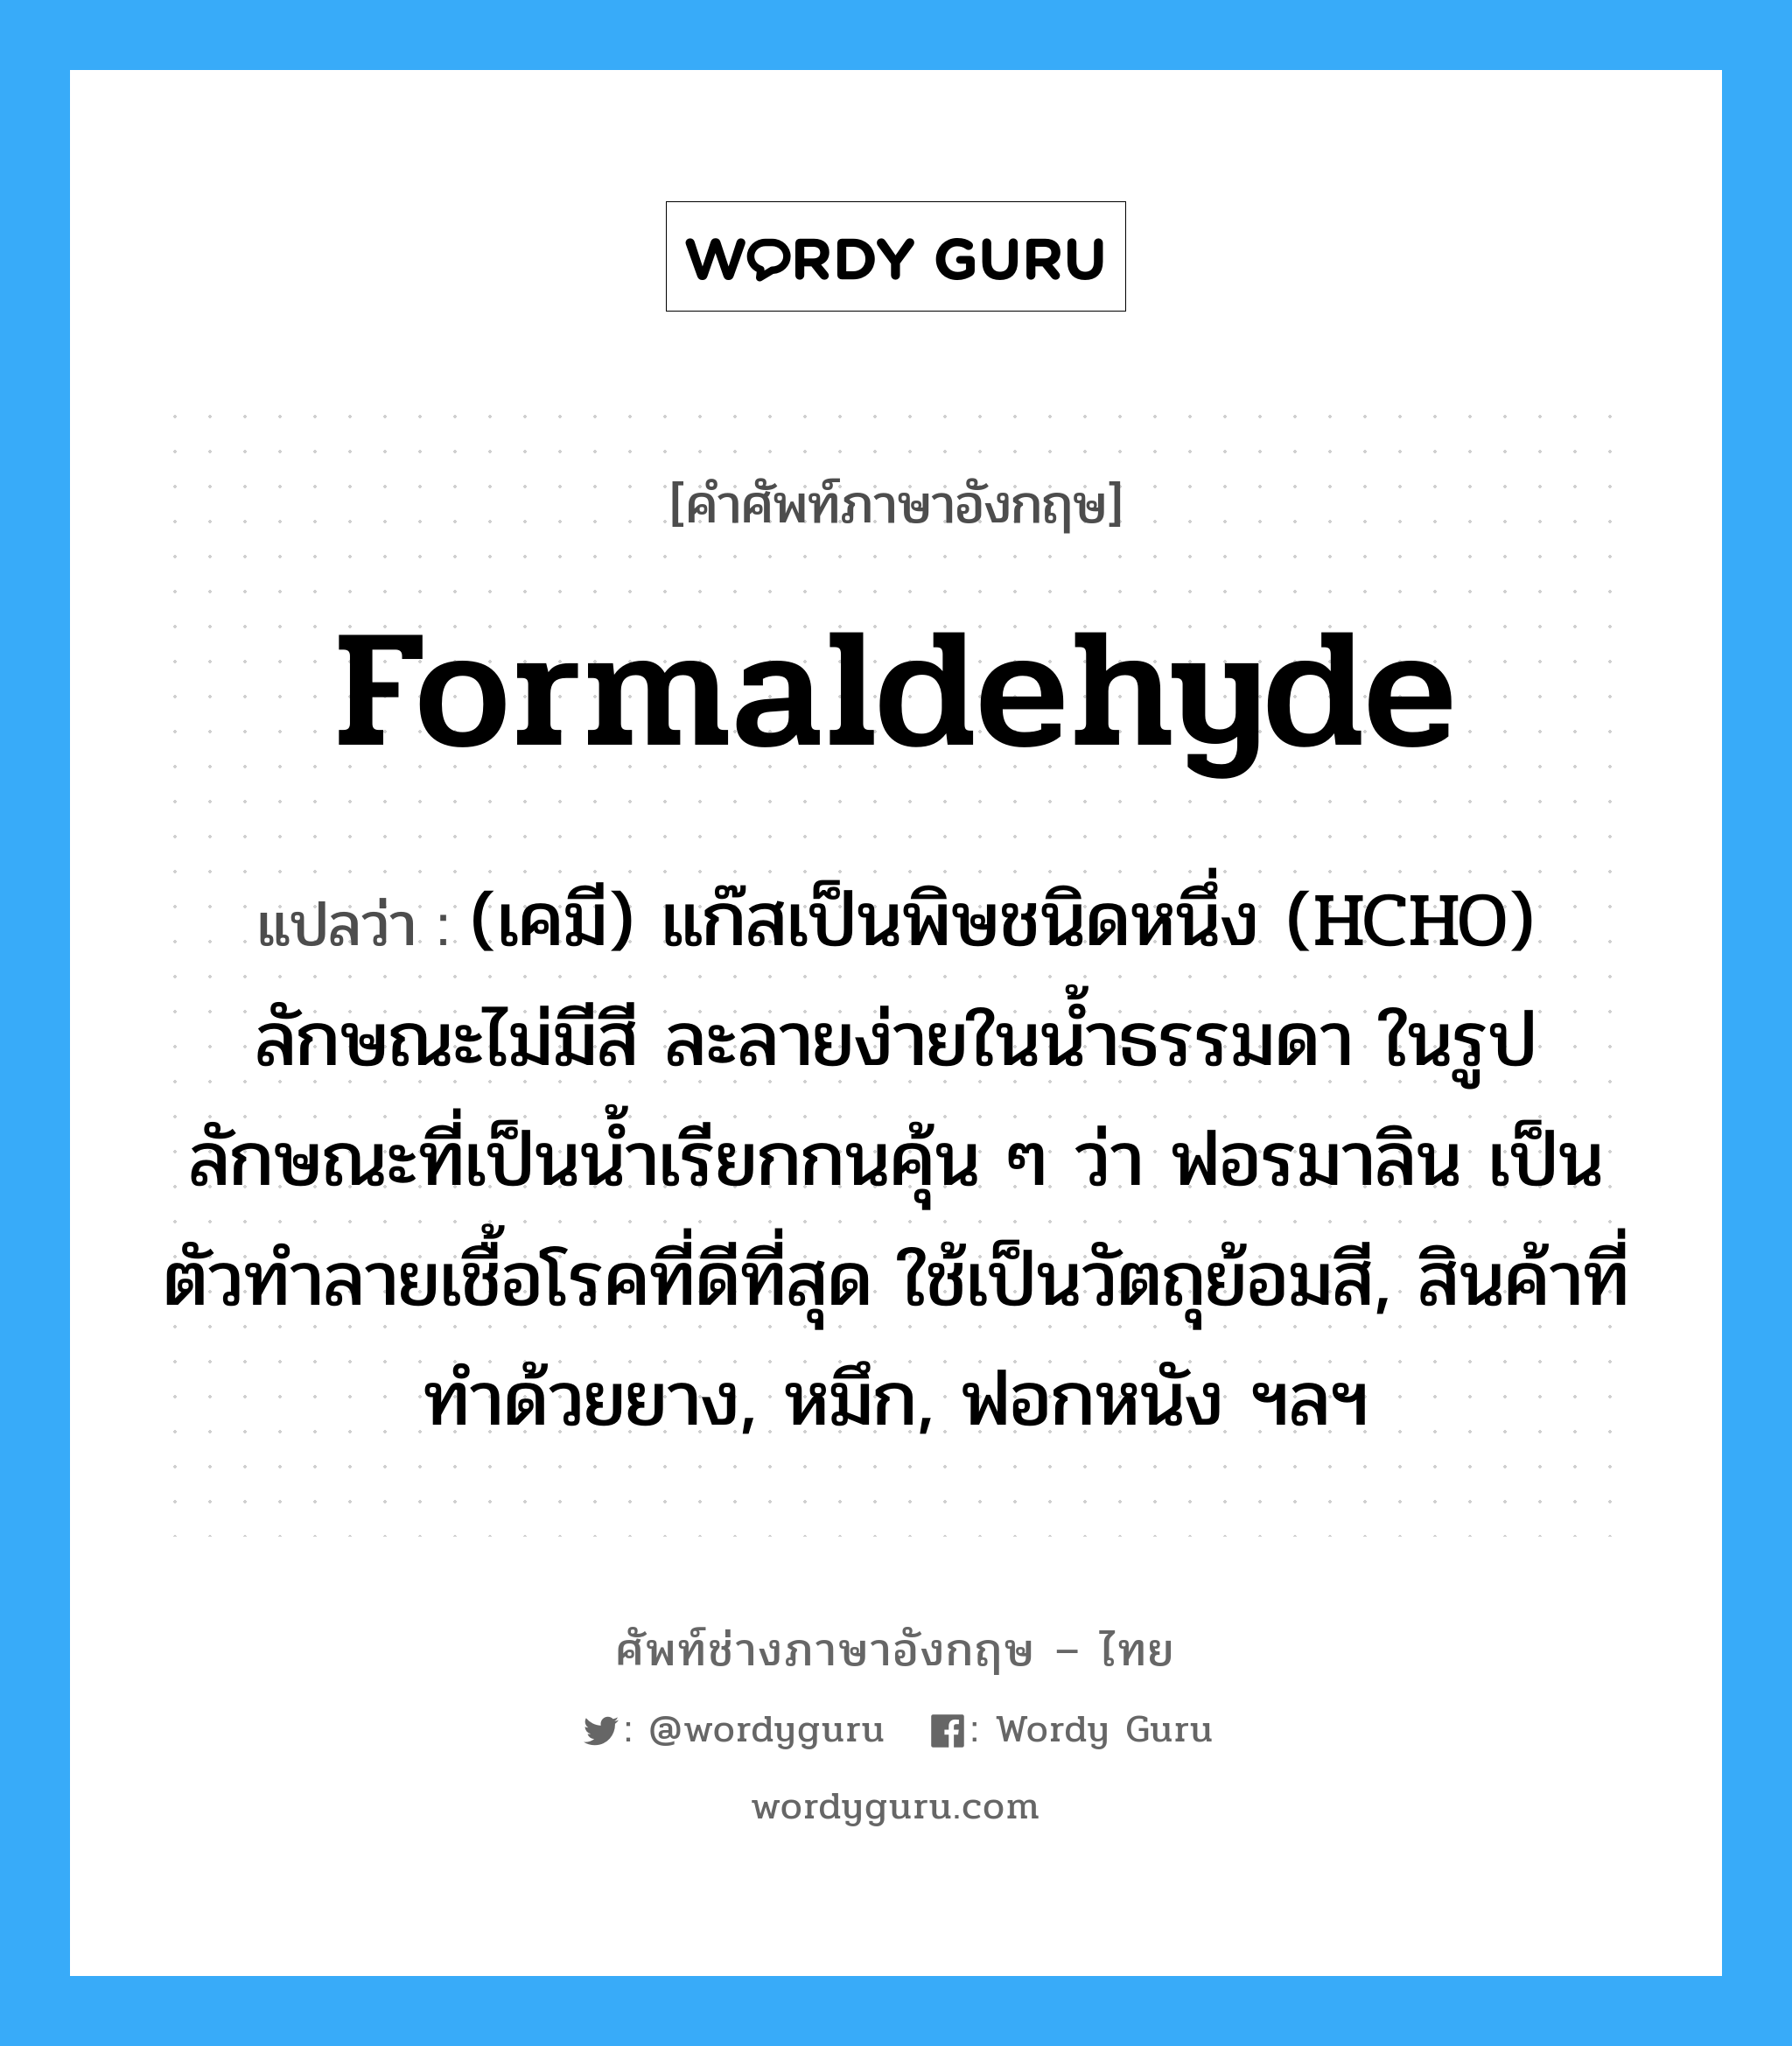 formaldehyde แปลว่า?, คำศัพท์ช่างภาษาอังกฤษ - ไทย formaldehyde คำศัพท์ภาษาอังกฤษ formaldehyde แปลว่า (เคมี) แก๊สเป็นพิษชนิดหนึ่ง (HCHO) ลักษณะไม่มีสี ละลายง่ายในน้ำธรรมดา ในรูปลักษณะที่เป็นน้ำเรียกกนคุ้น ๆ ว่า ฟอรมาลิน เป็นตัวทำลายเชื้อโรคที่ดีที่สุด ใช้เป็นวัตถุย้อมสี, สินค้าที่ทำด้วยยาง, หมึก, ฟอกหนัง ฯลฯ